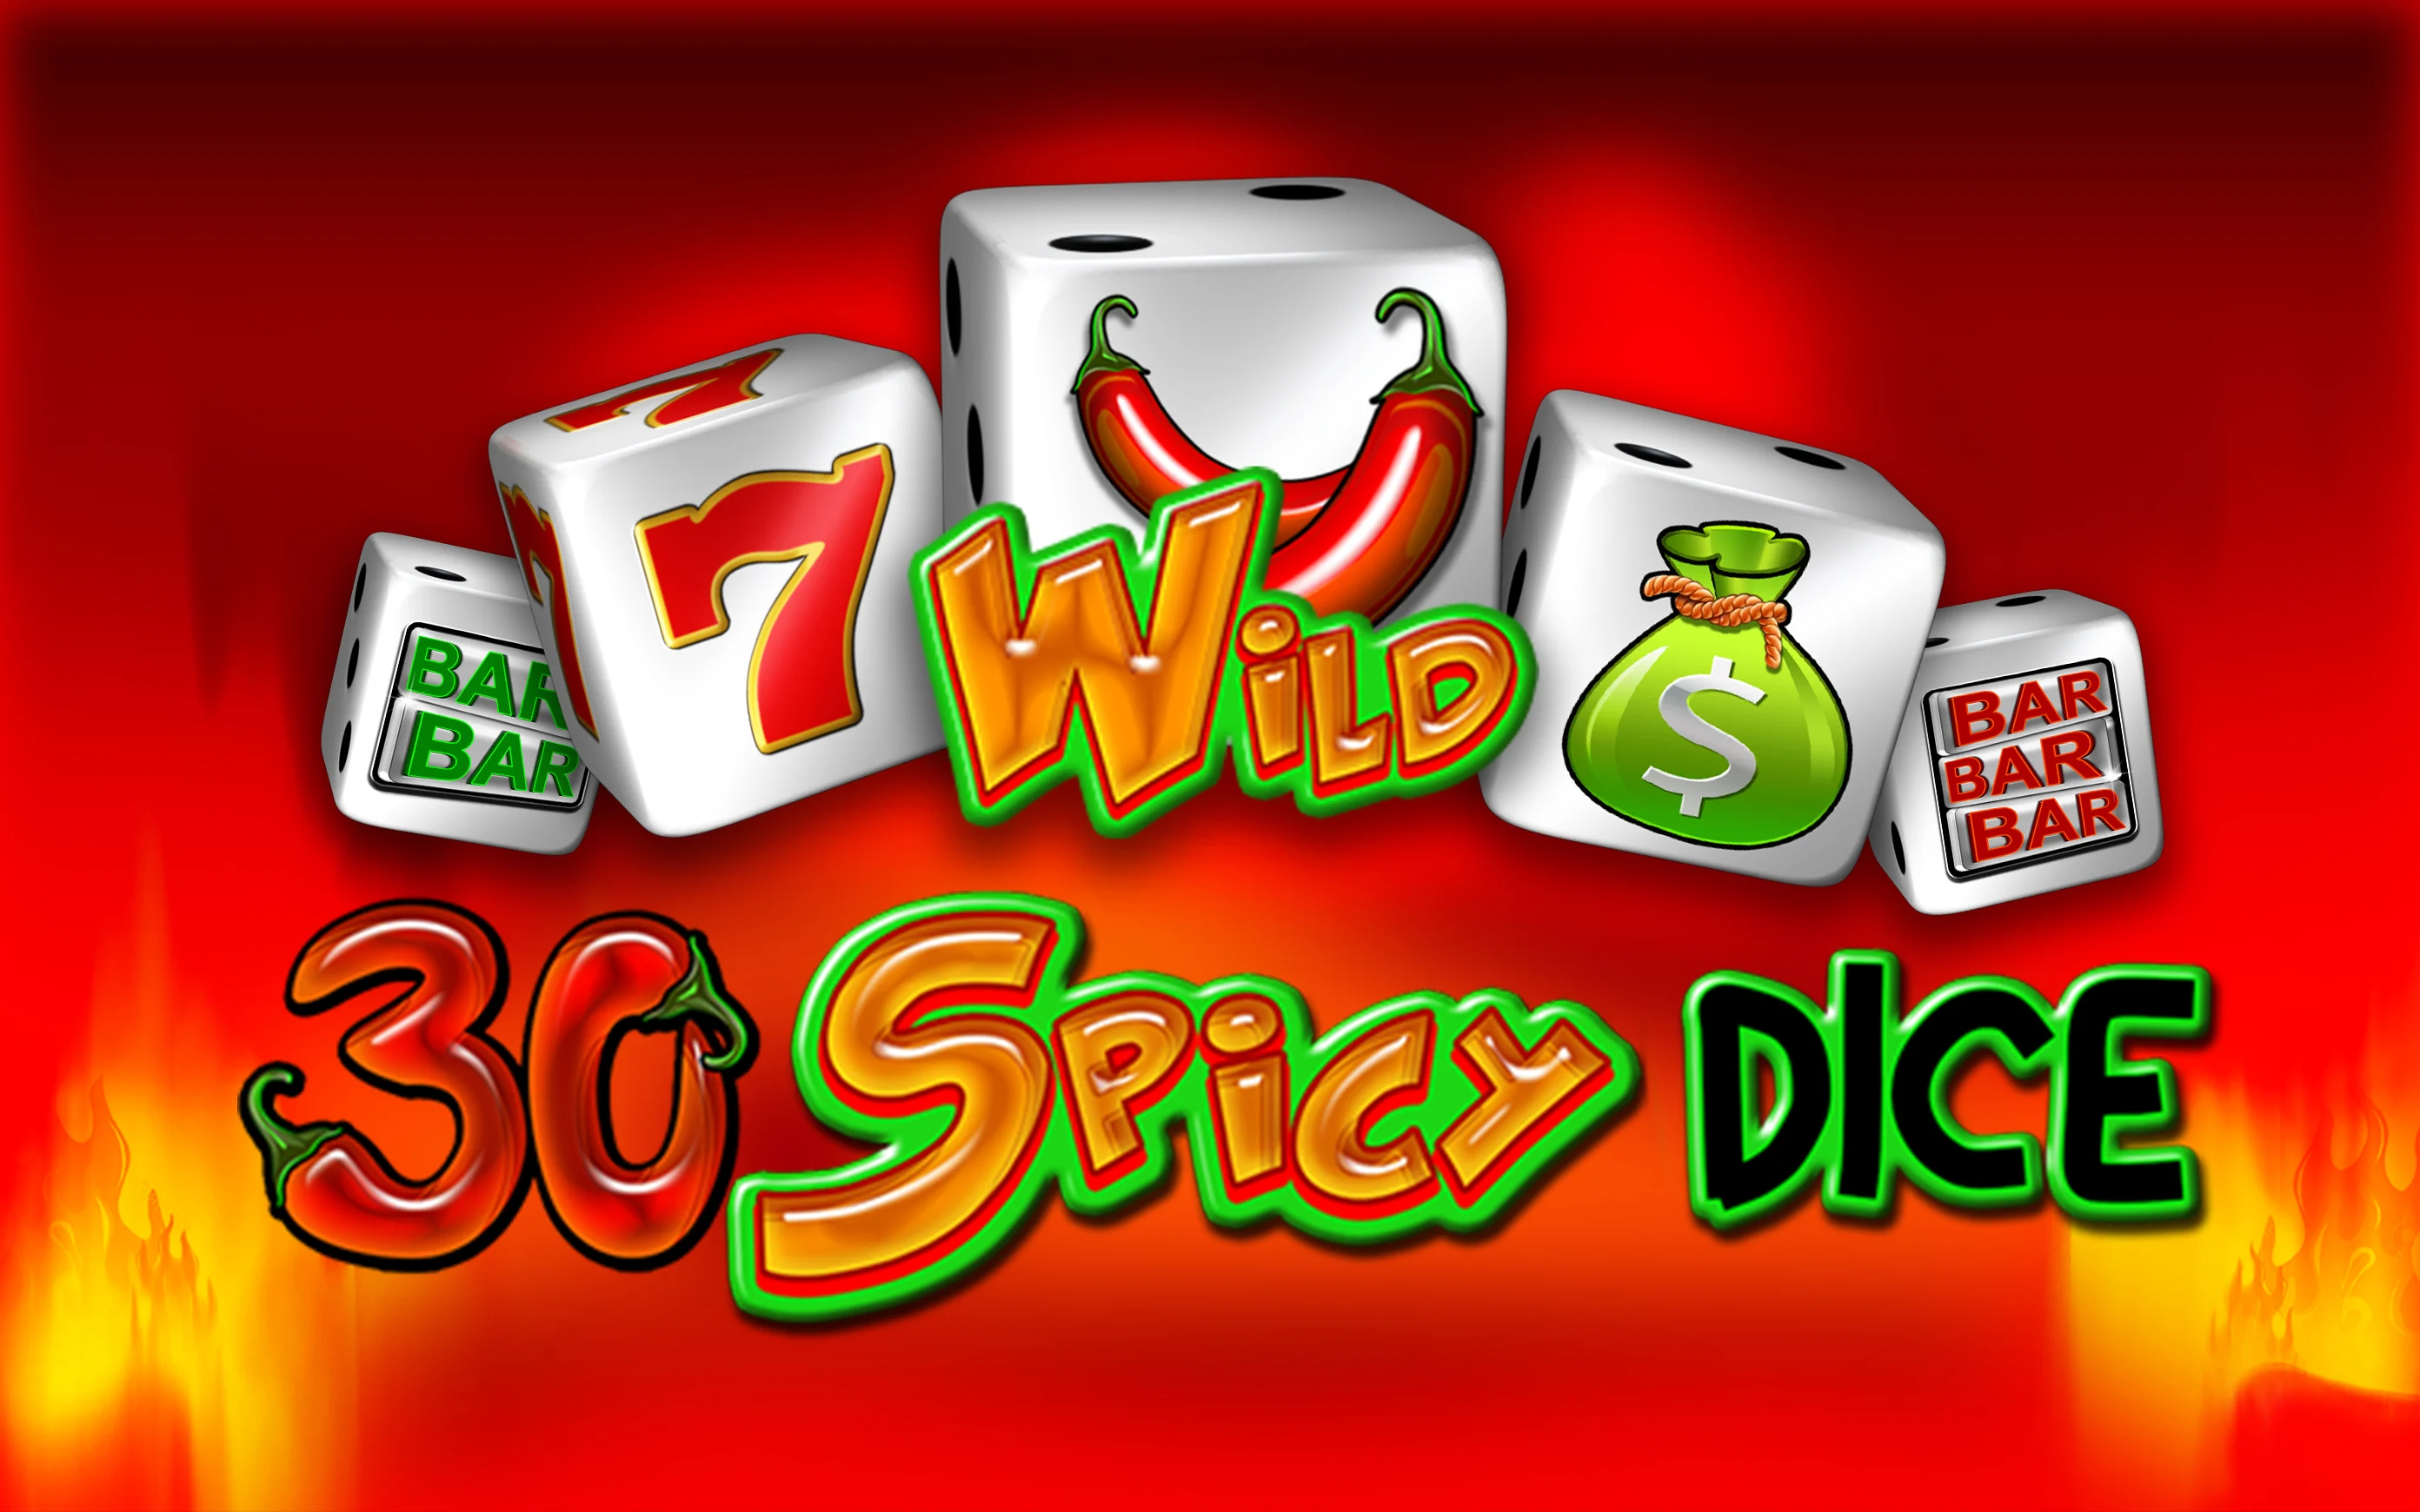 Gioca a 30 Spicy Dice sul casino online Starcasino.be